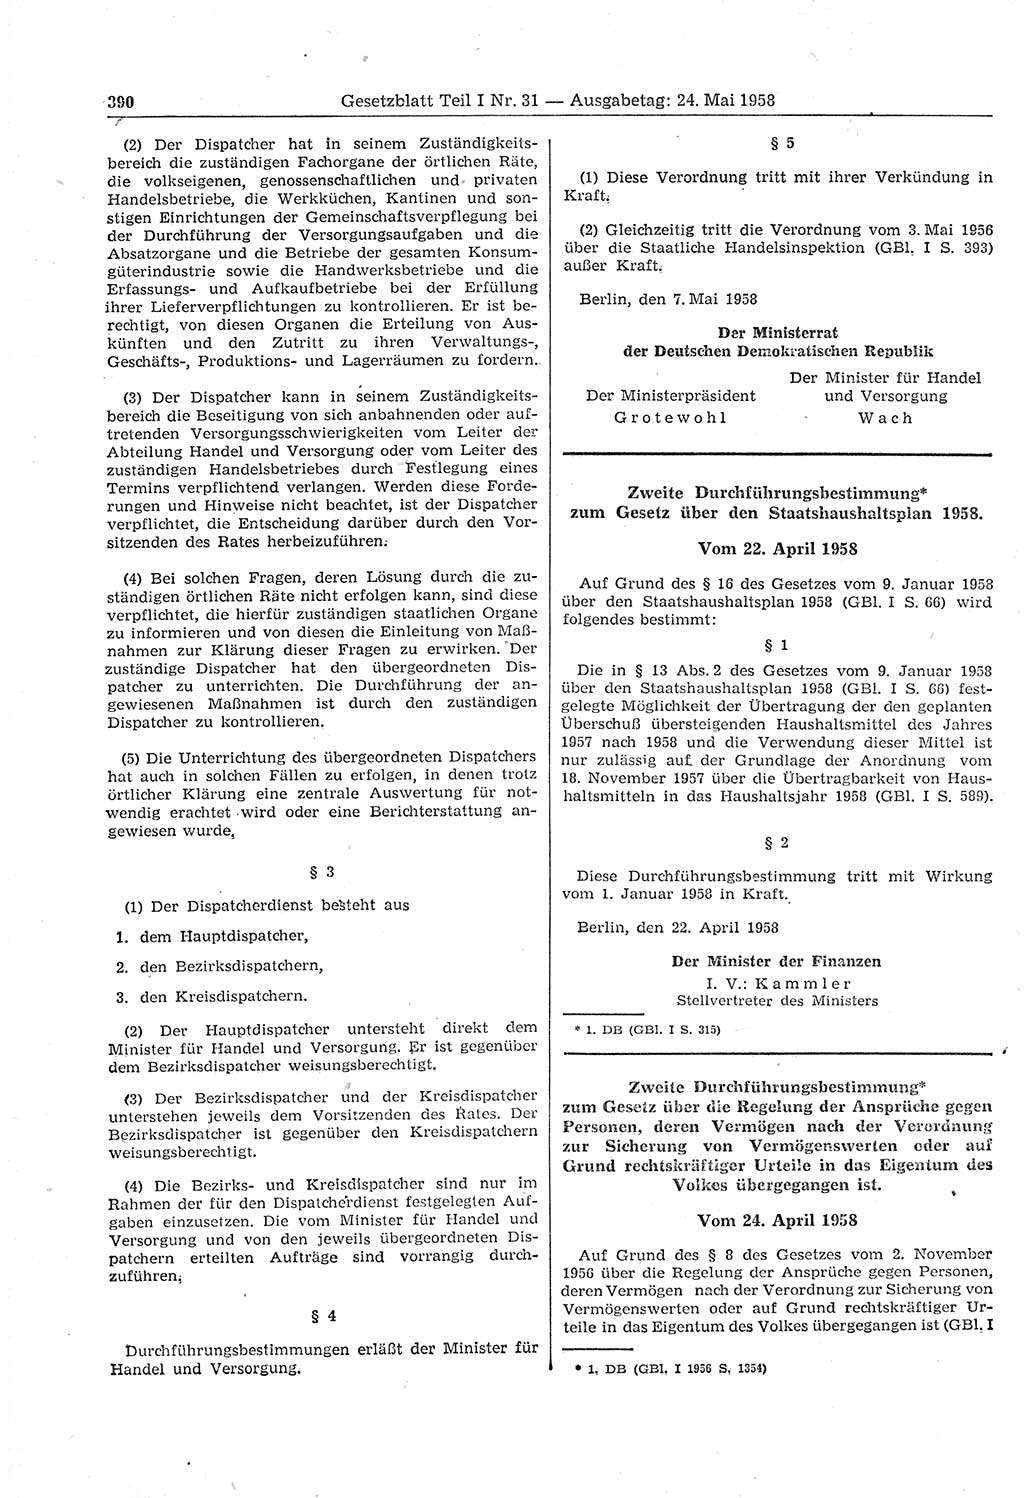 Gesetzblatt (GBl.) der Deutschen Demokratischen Republik (DDR) Teil Ⅰ 1958, Seite 390 (GBl. DDR Ⅰ 1958, S. 390)